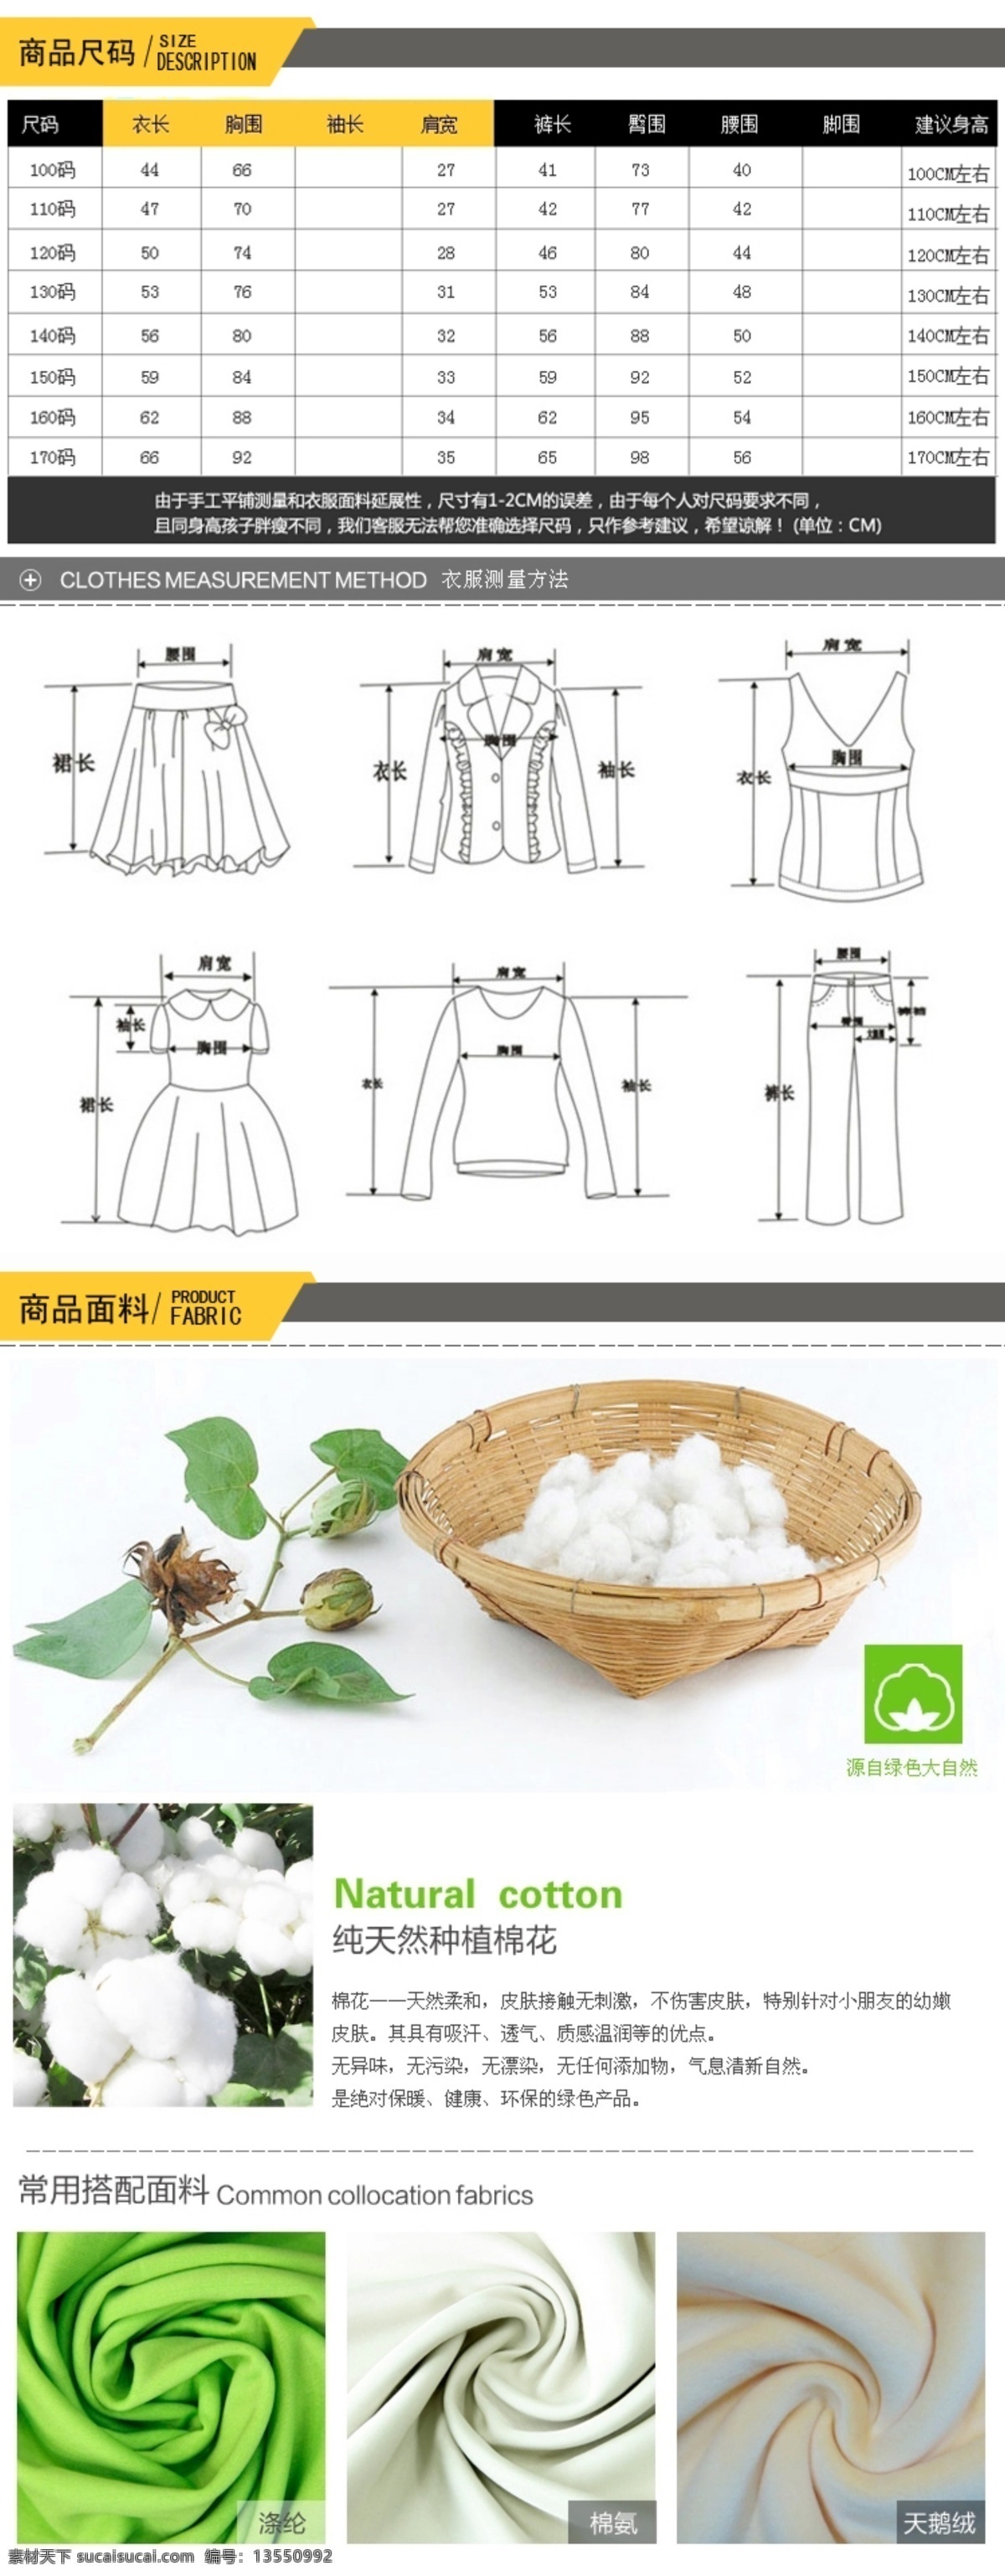 衣服的尺码 测量 方法 面料 材质 详情展示 淘宝 棉布材料 白色